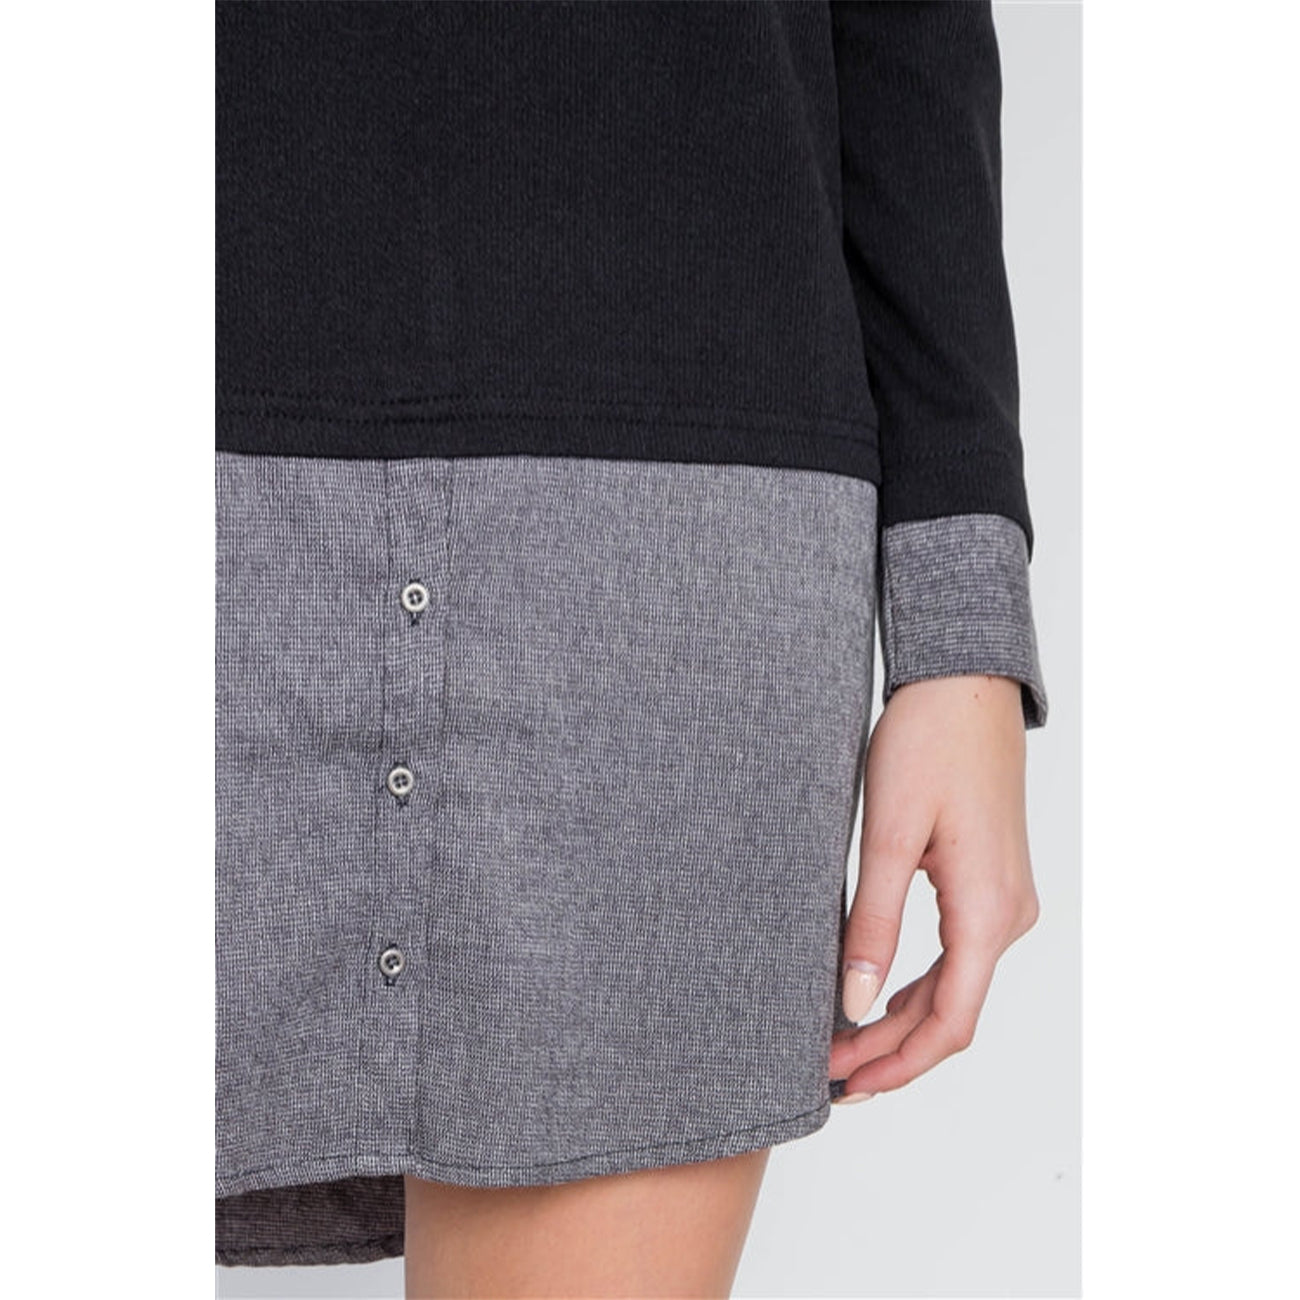 Knit Combo Long Sleeve Women's Sweater Dress